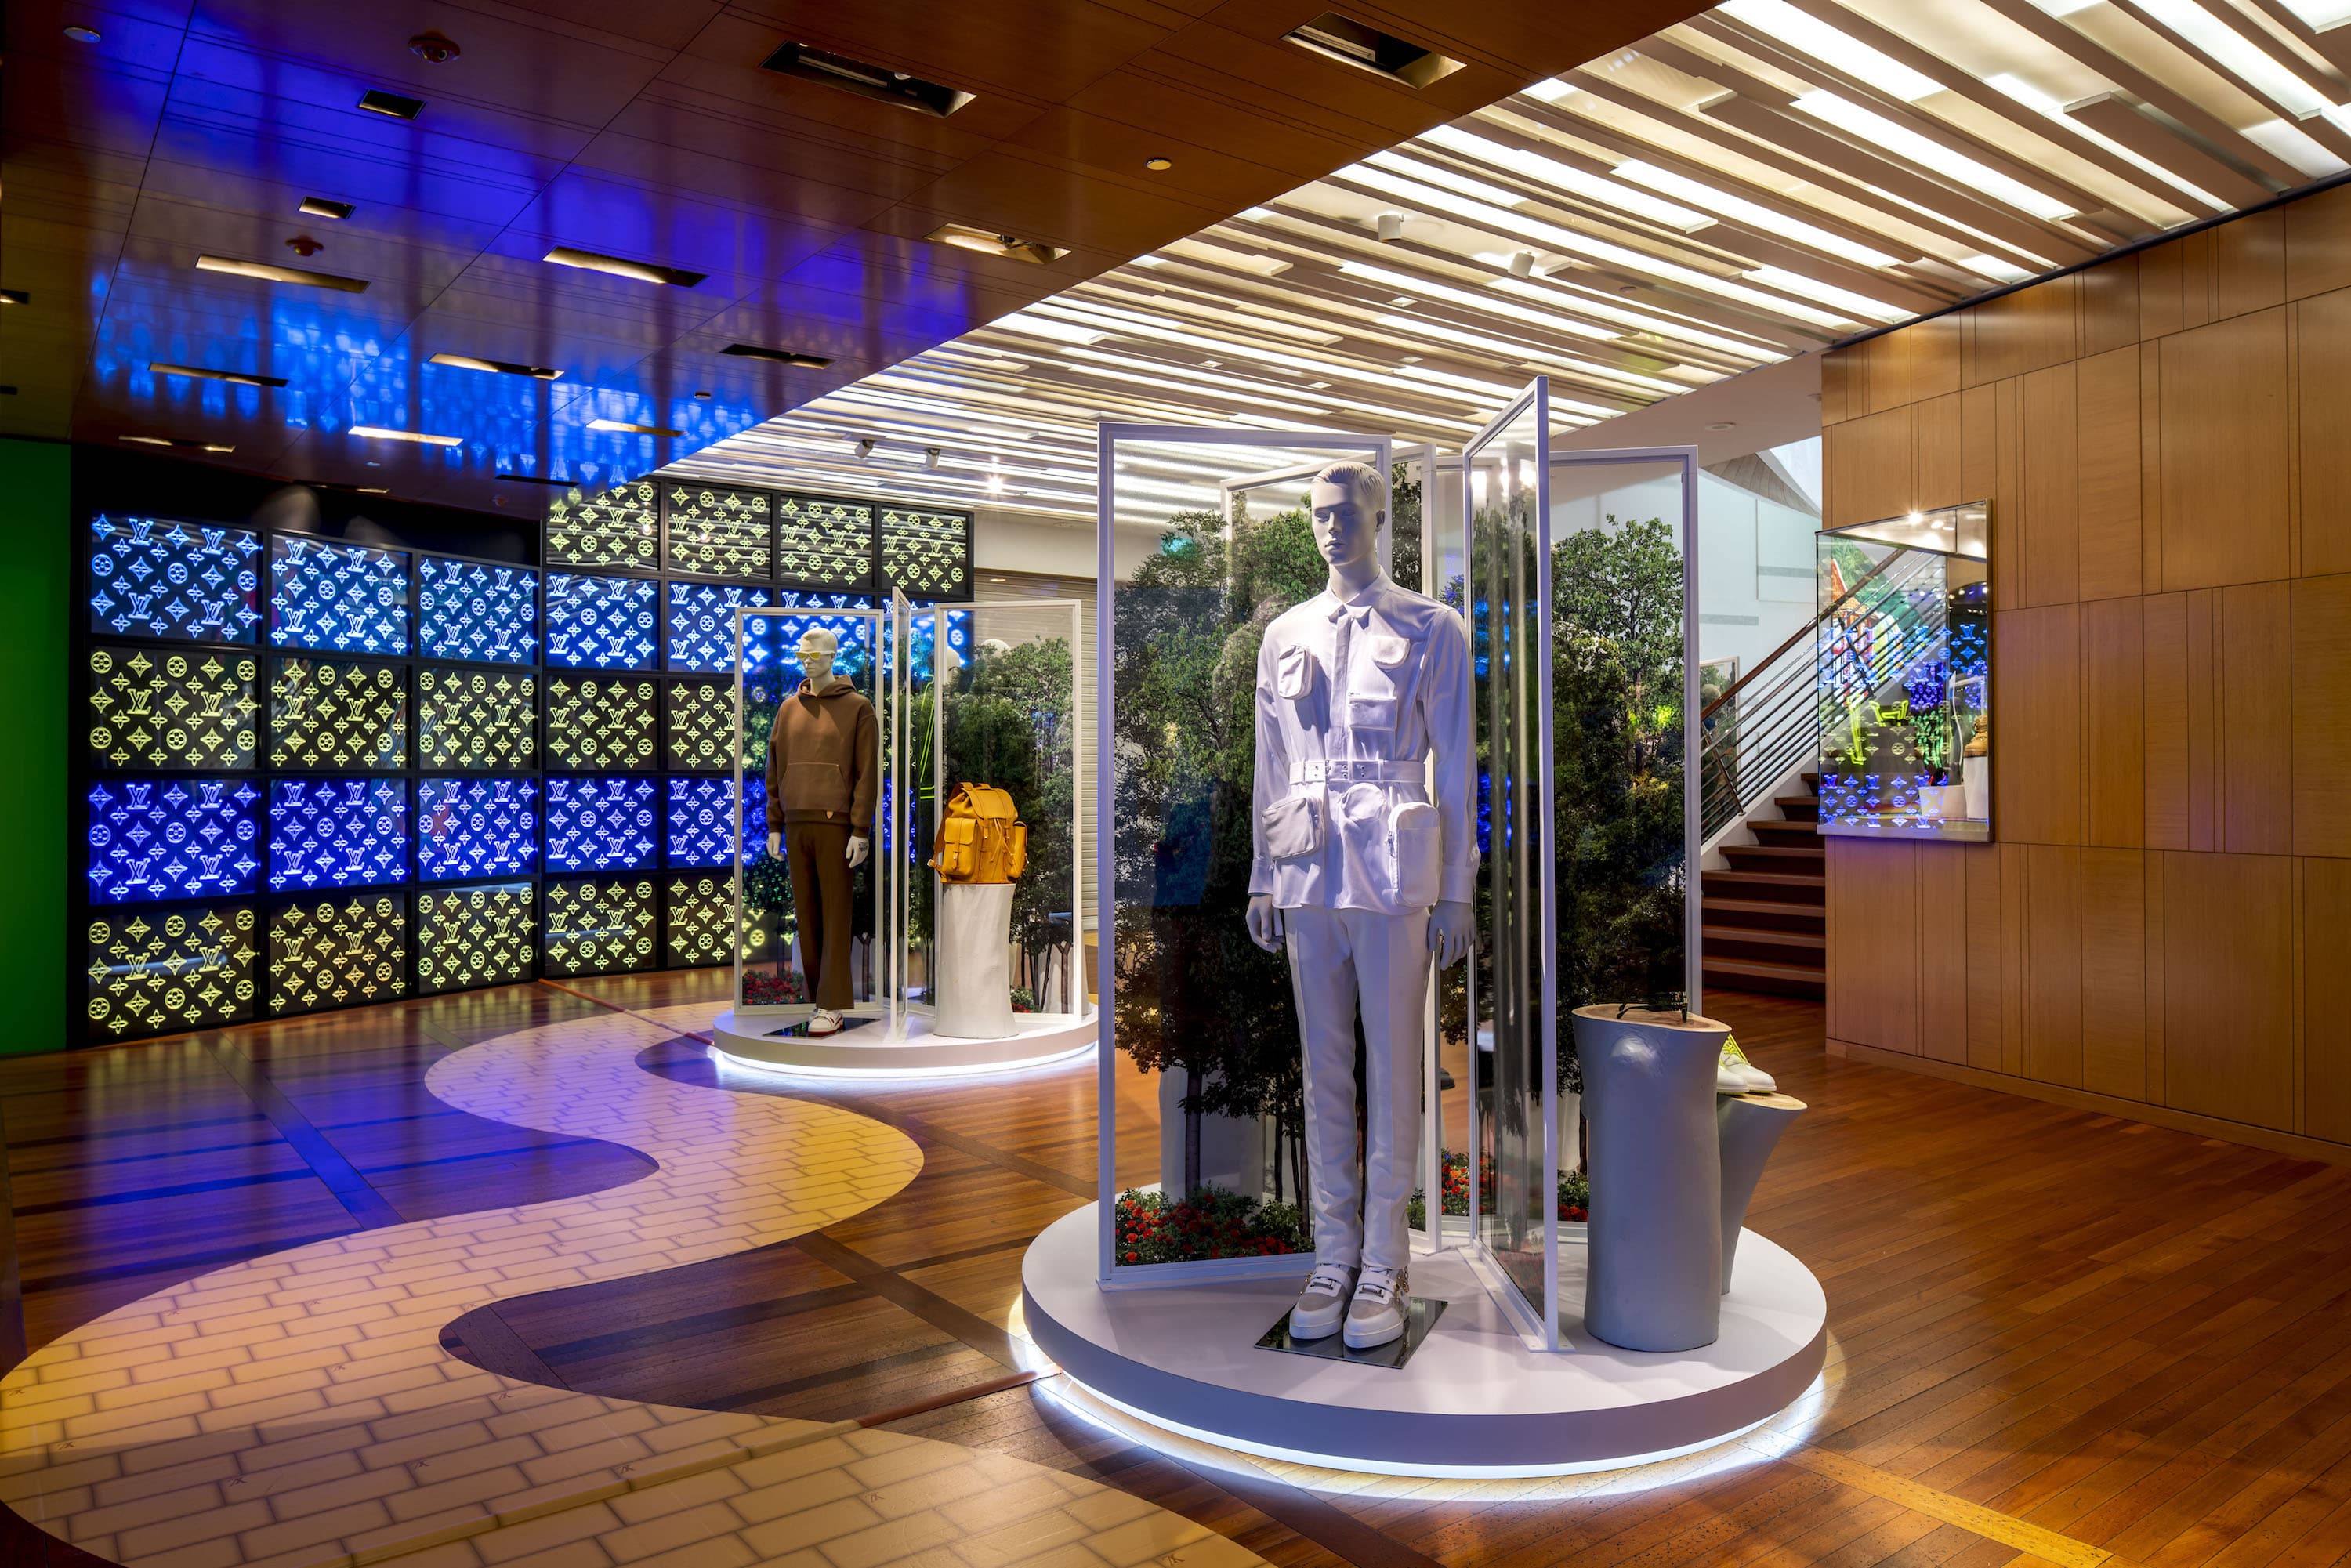 Virgil Abloh's provocative debut for Louis Vuitton has hit Singapore